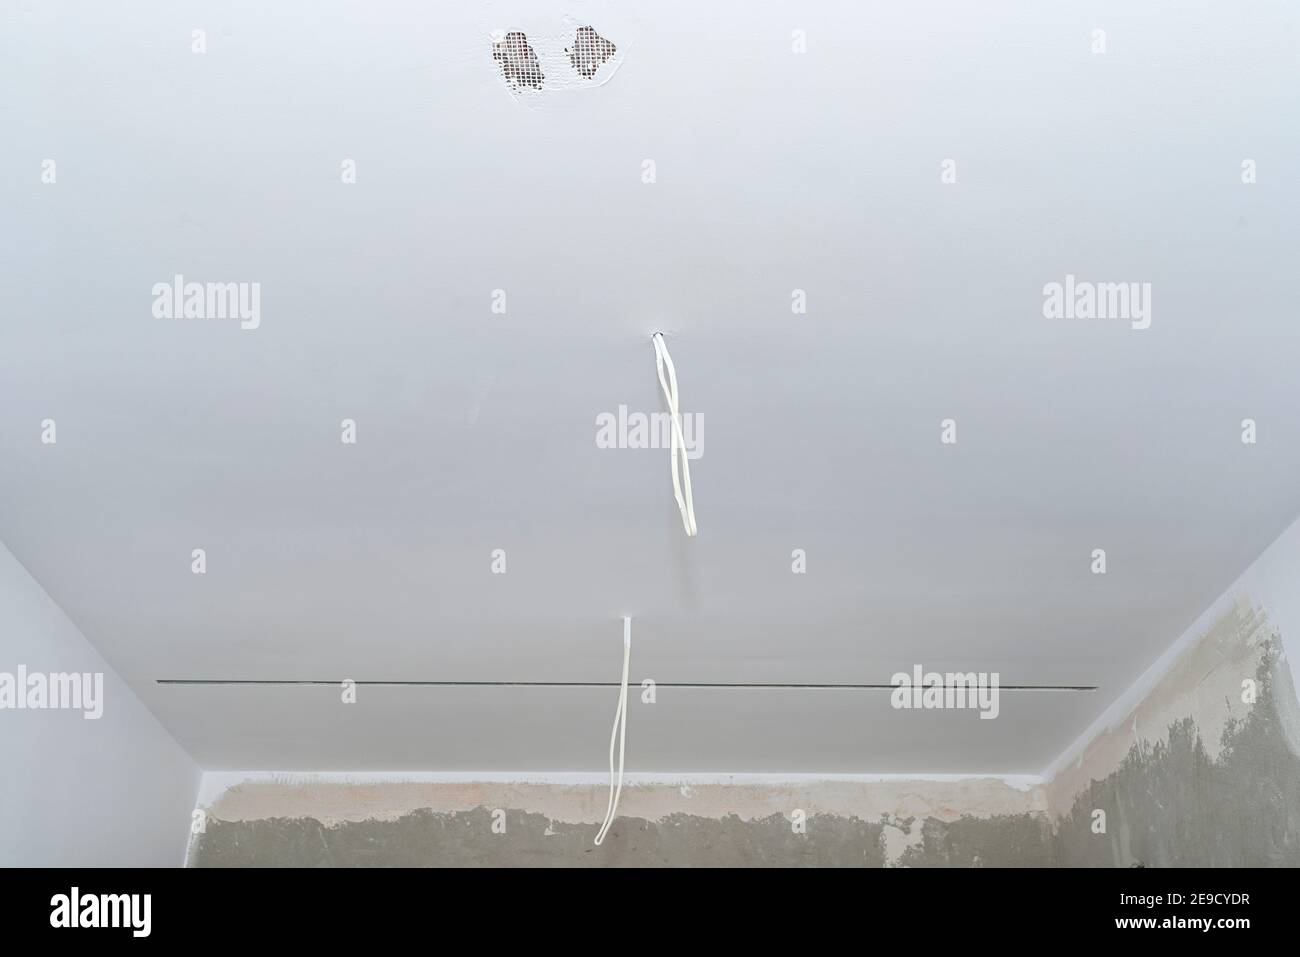 Zwei Kabel aus Deckenbeleuchtung ragen aus Decken ohne Glühbirnen  Stockfotografie - Alamy